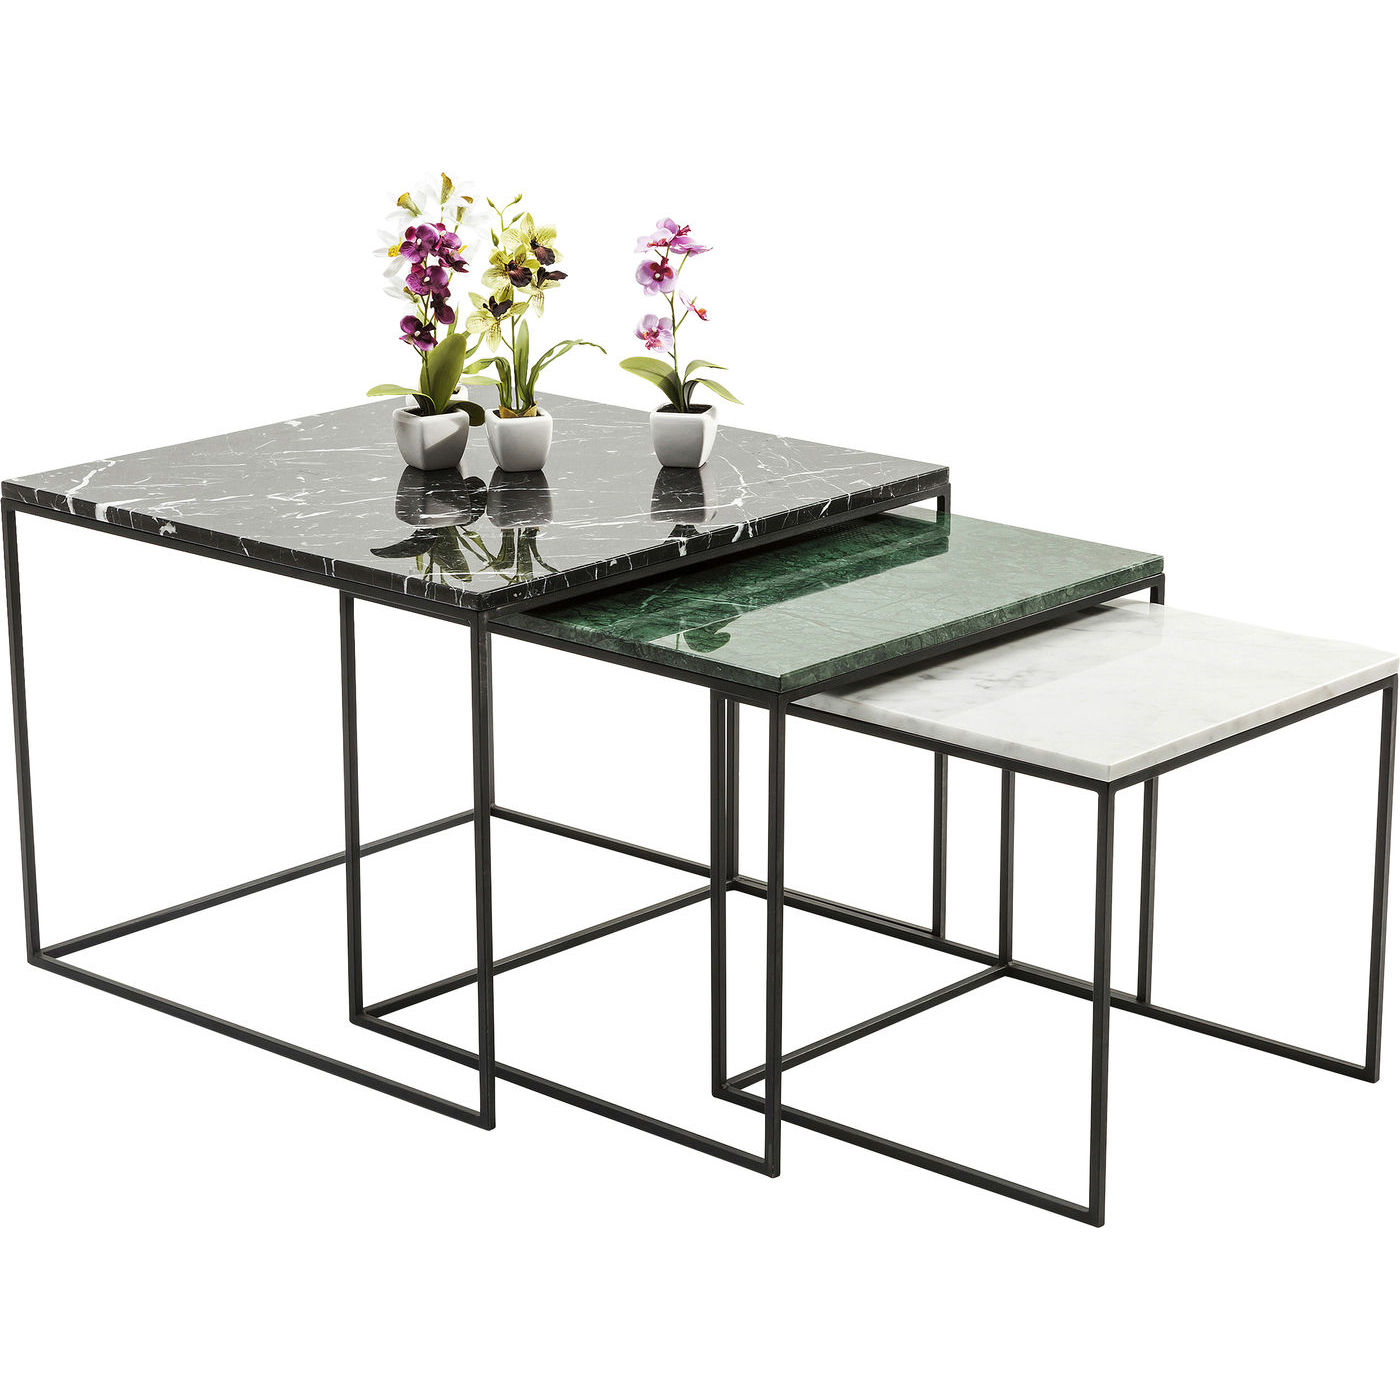 #3 - KARE DESIGN Marmor East Coast indskudsborde - grønt/sort/hvidt marmor og stål (3/sæt) (udgår)